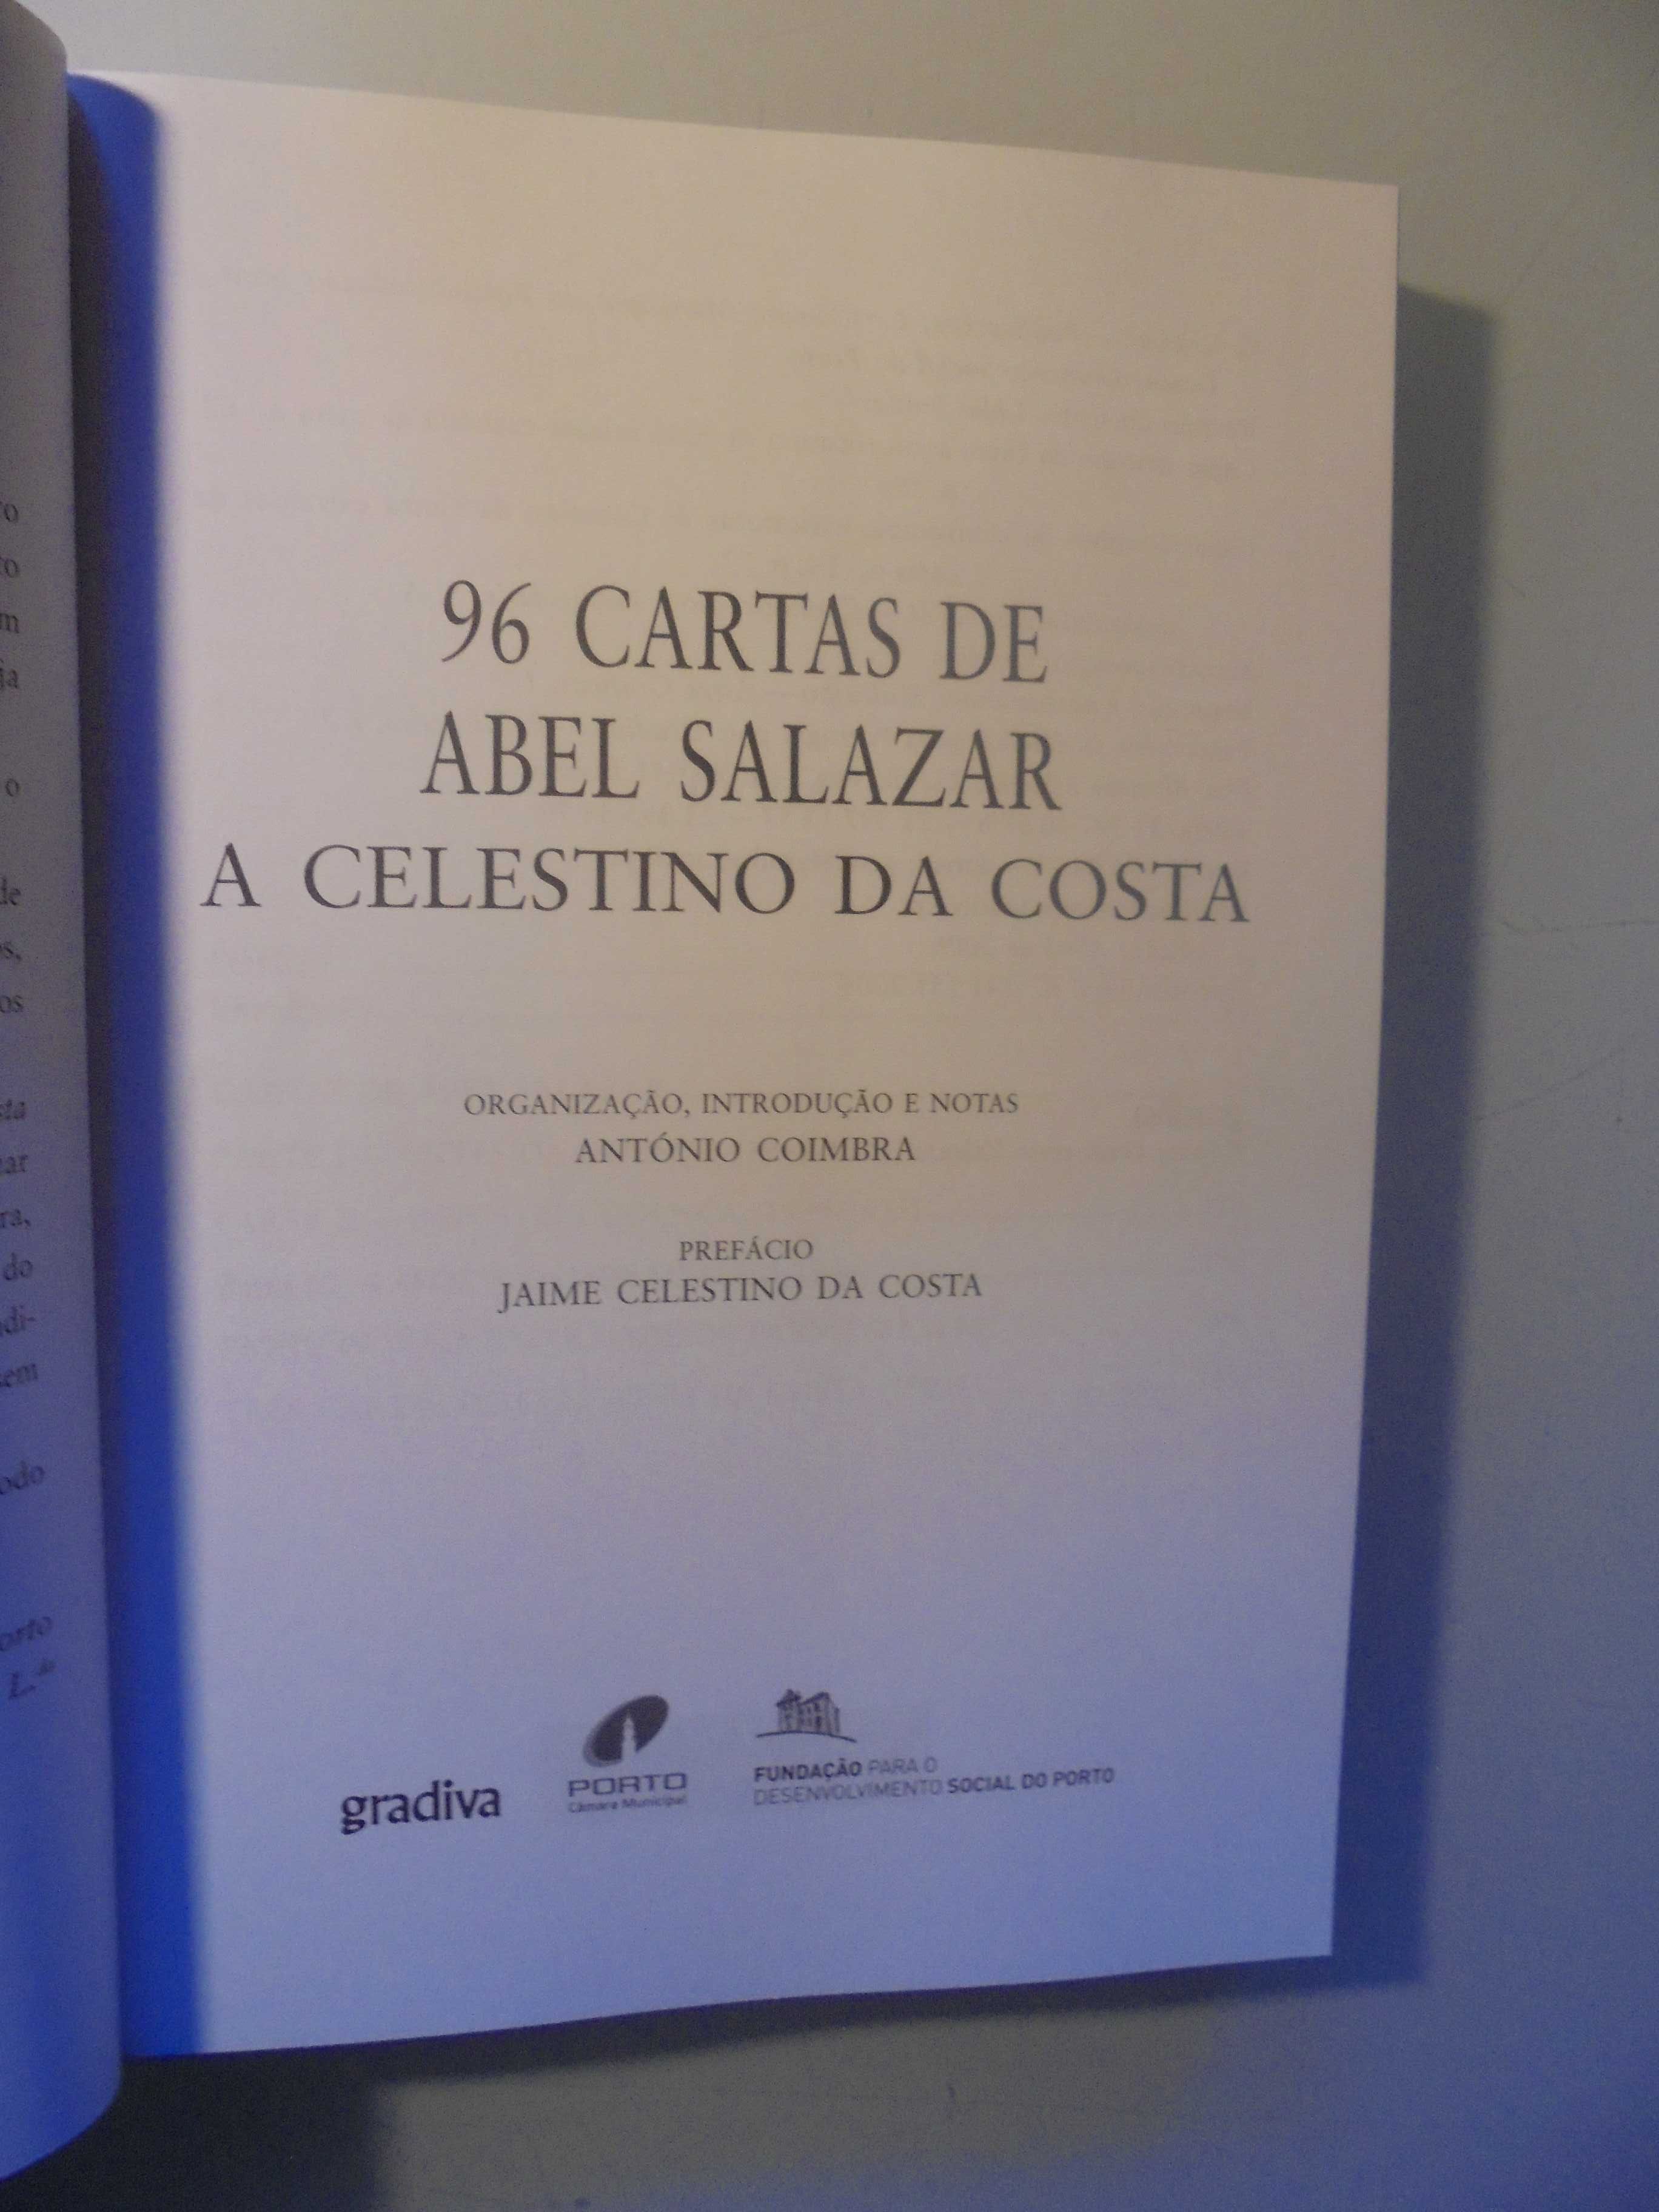 Coimbra (António)Abel Salazar-96 Cartas a Celestino da Costa